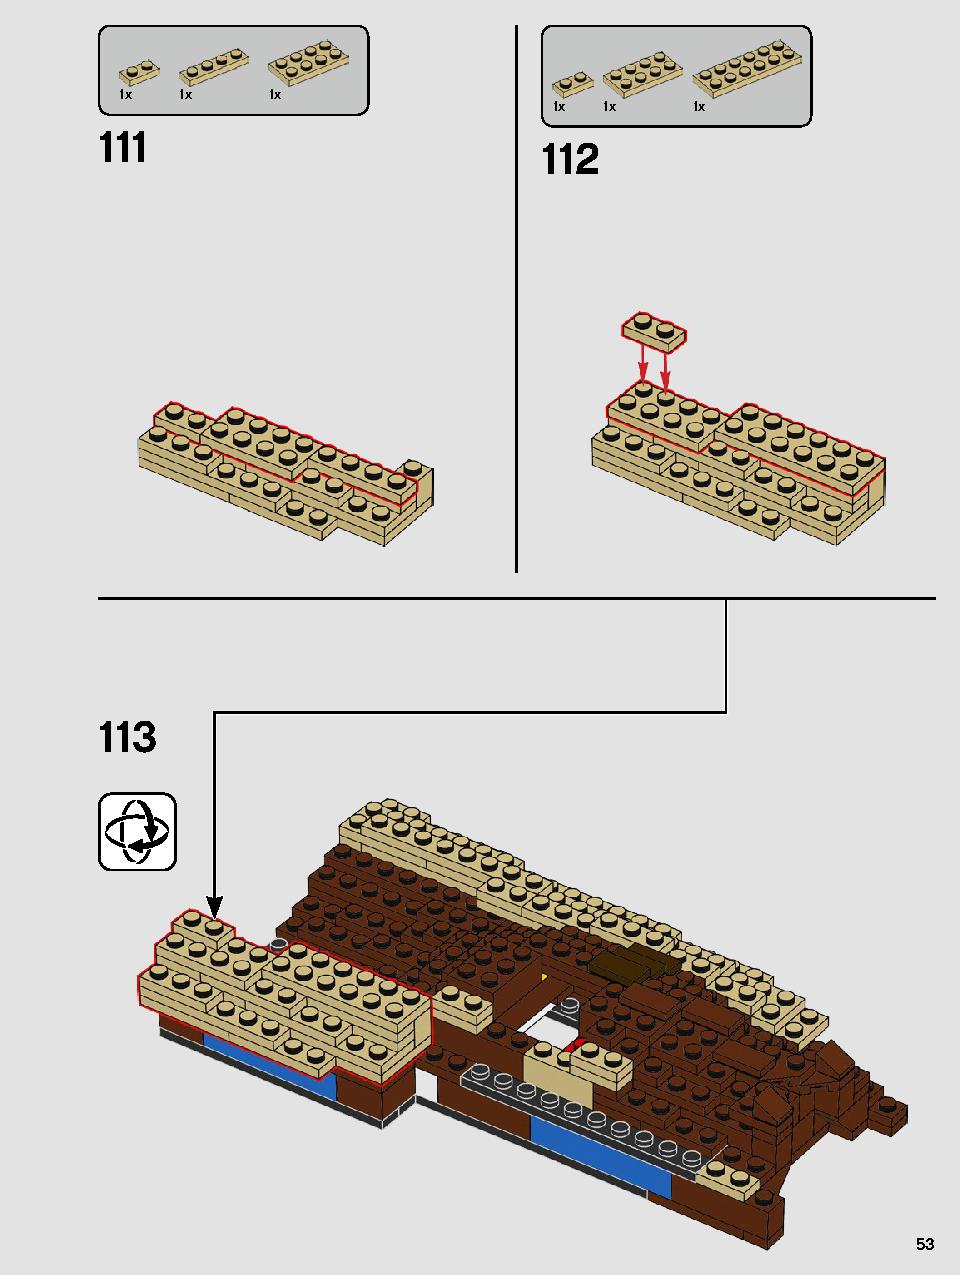 ヨーダ™ 75255 レゴの商品情報 レゴの説明書・組立方法 53 page